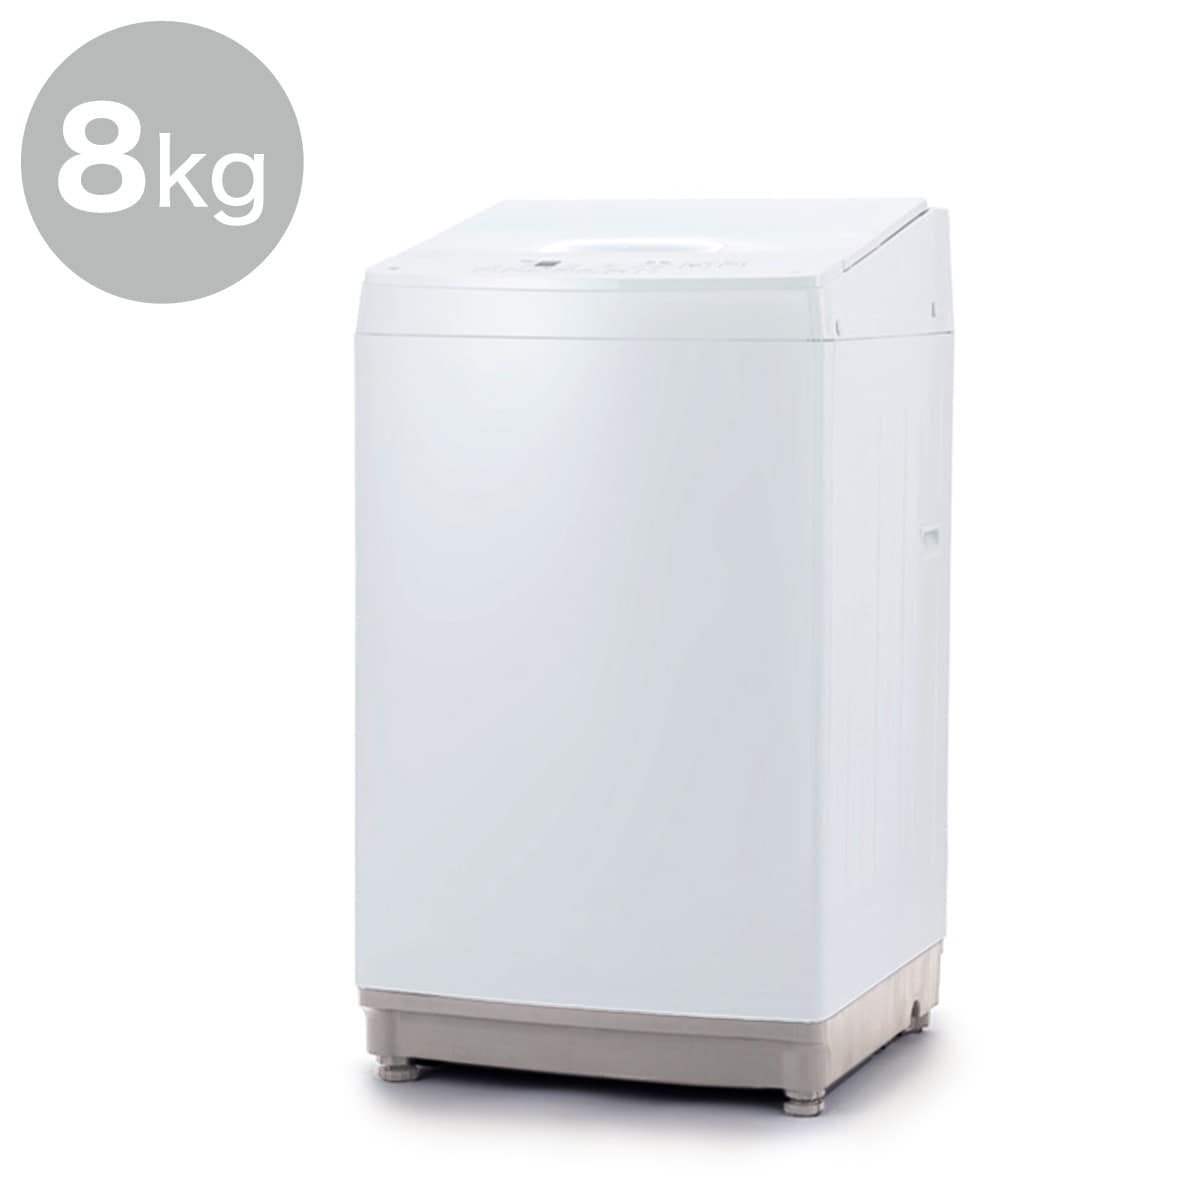 家電2点セット】274L冷蔵庫＋8kg洗濯機セット通販 | ニトリネット 